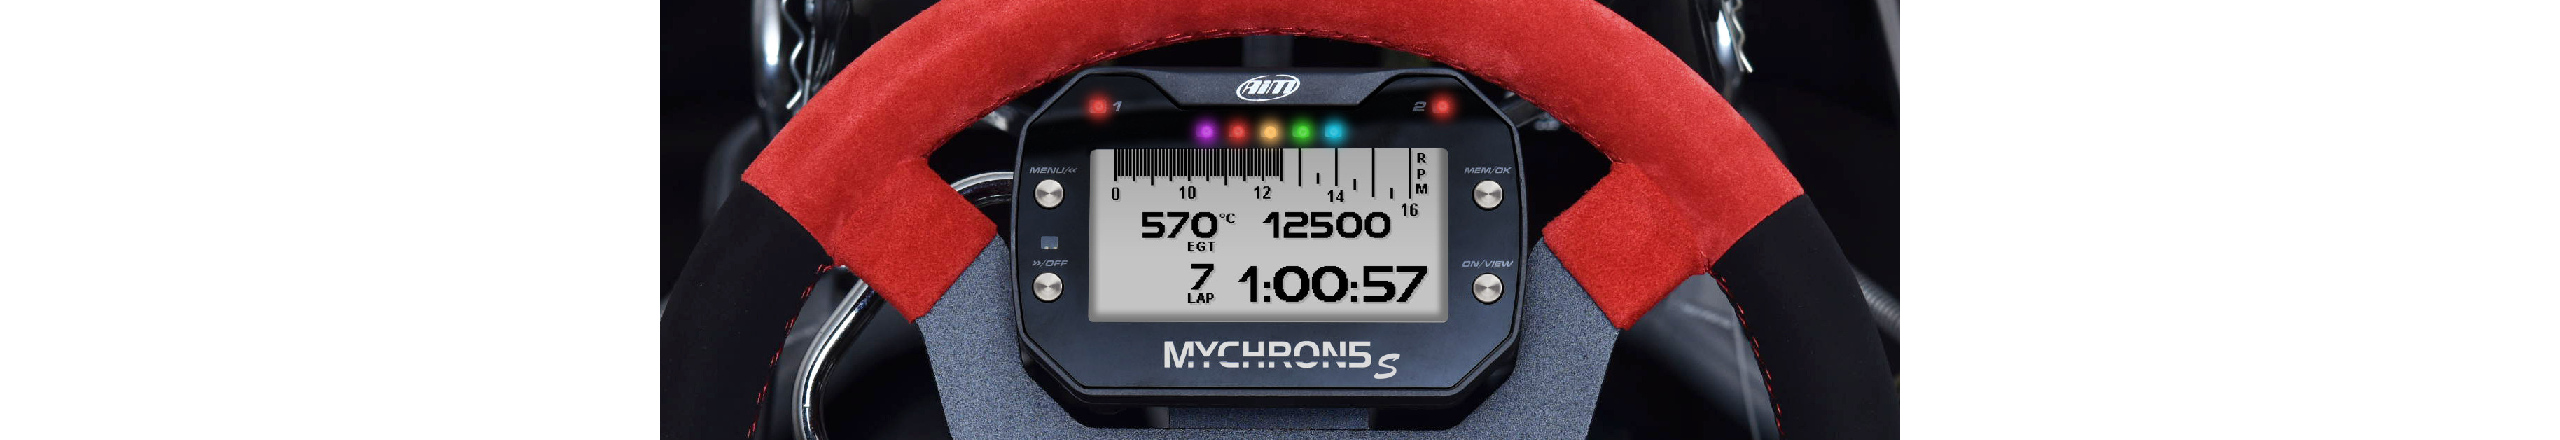 Shop MyChron5s lap timers and accessoires